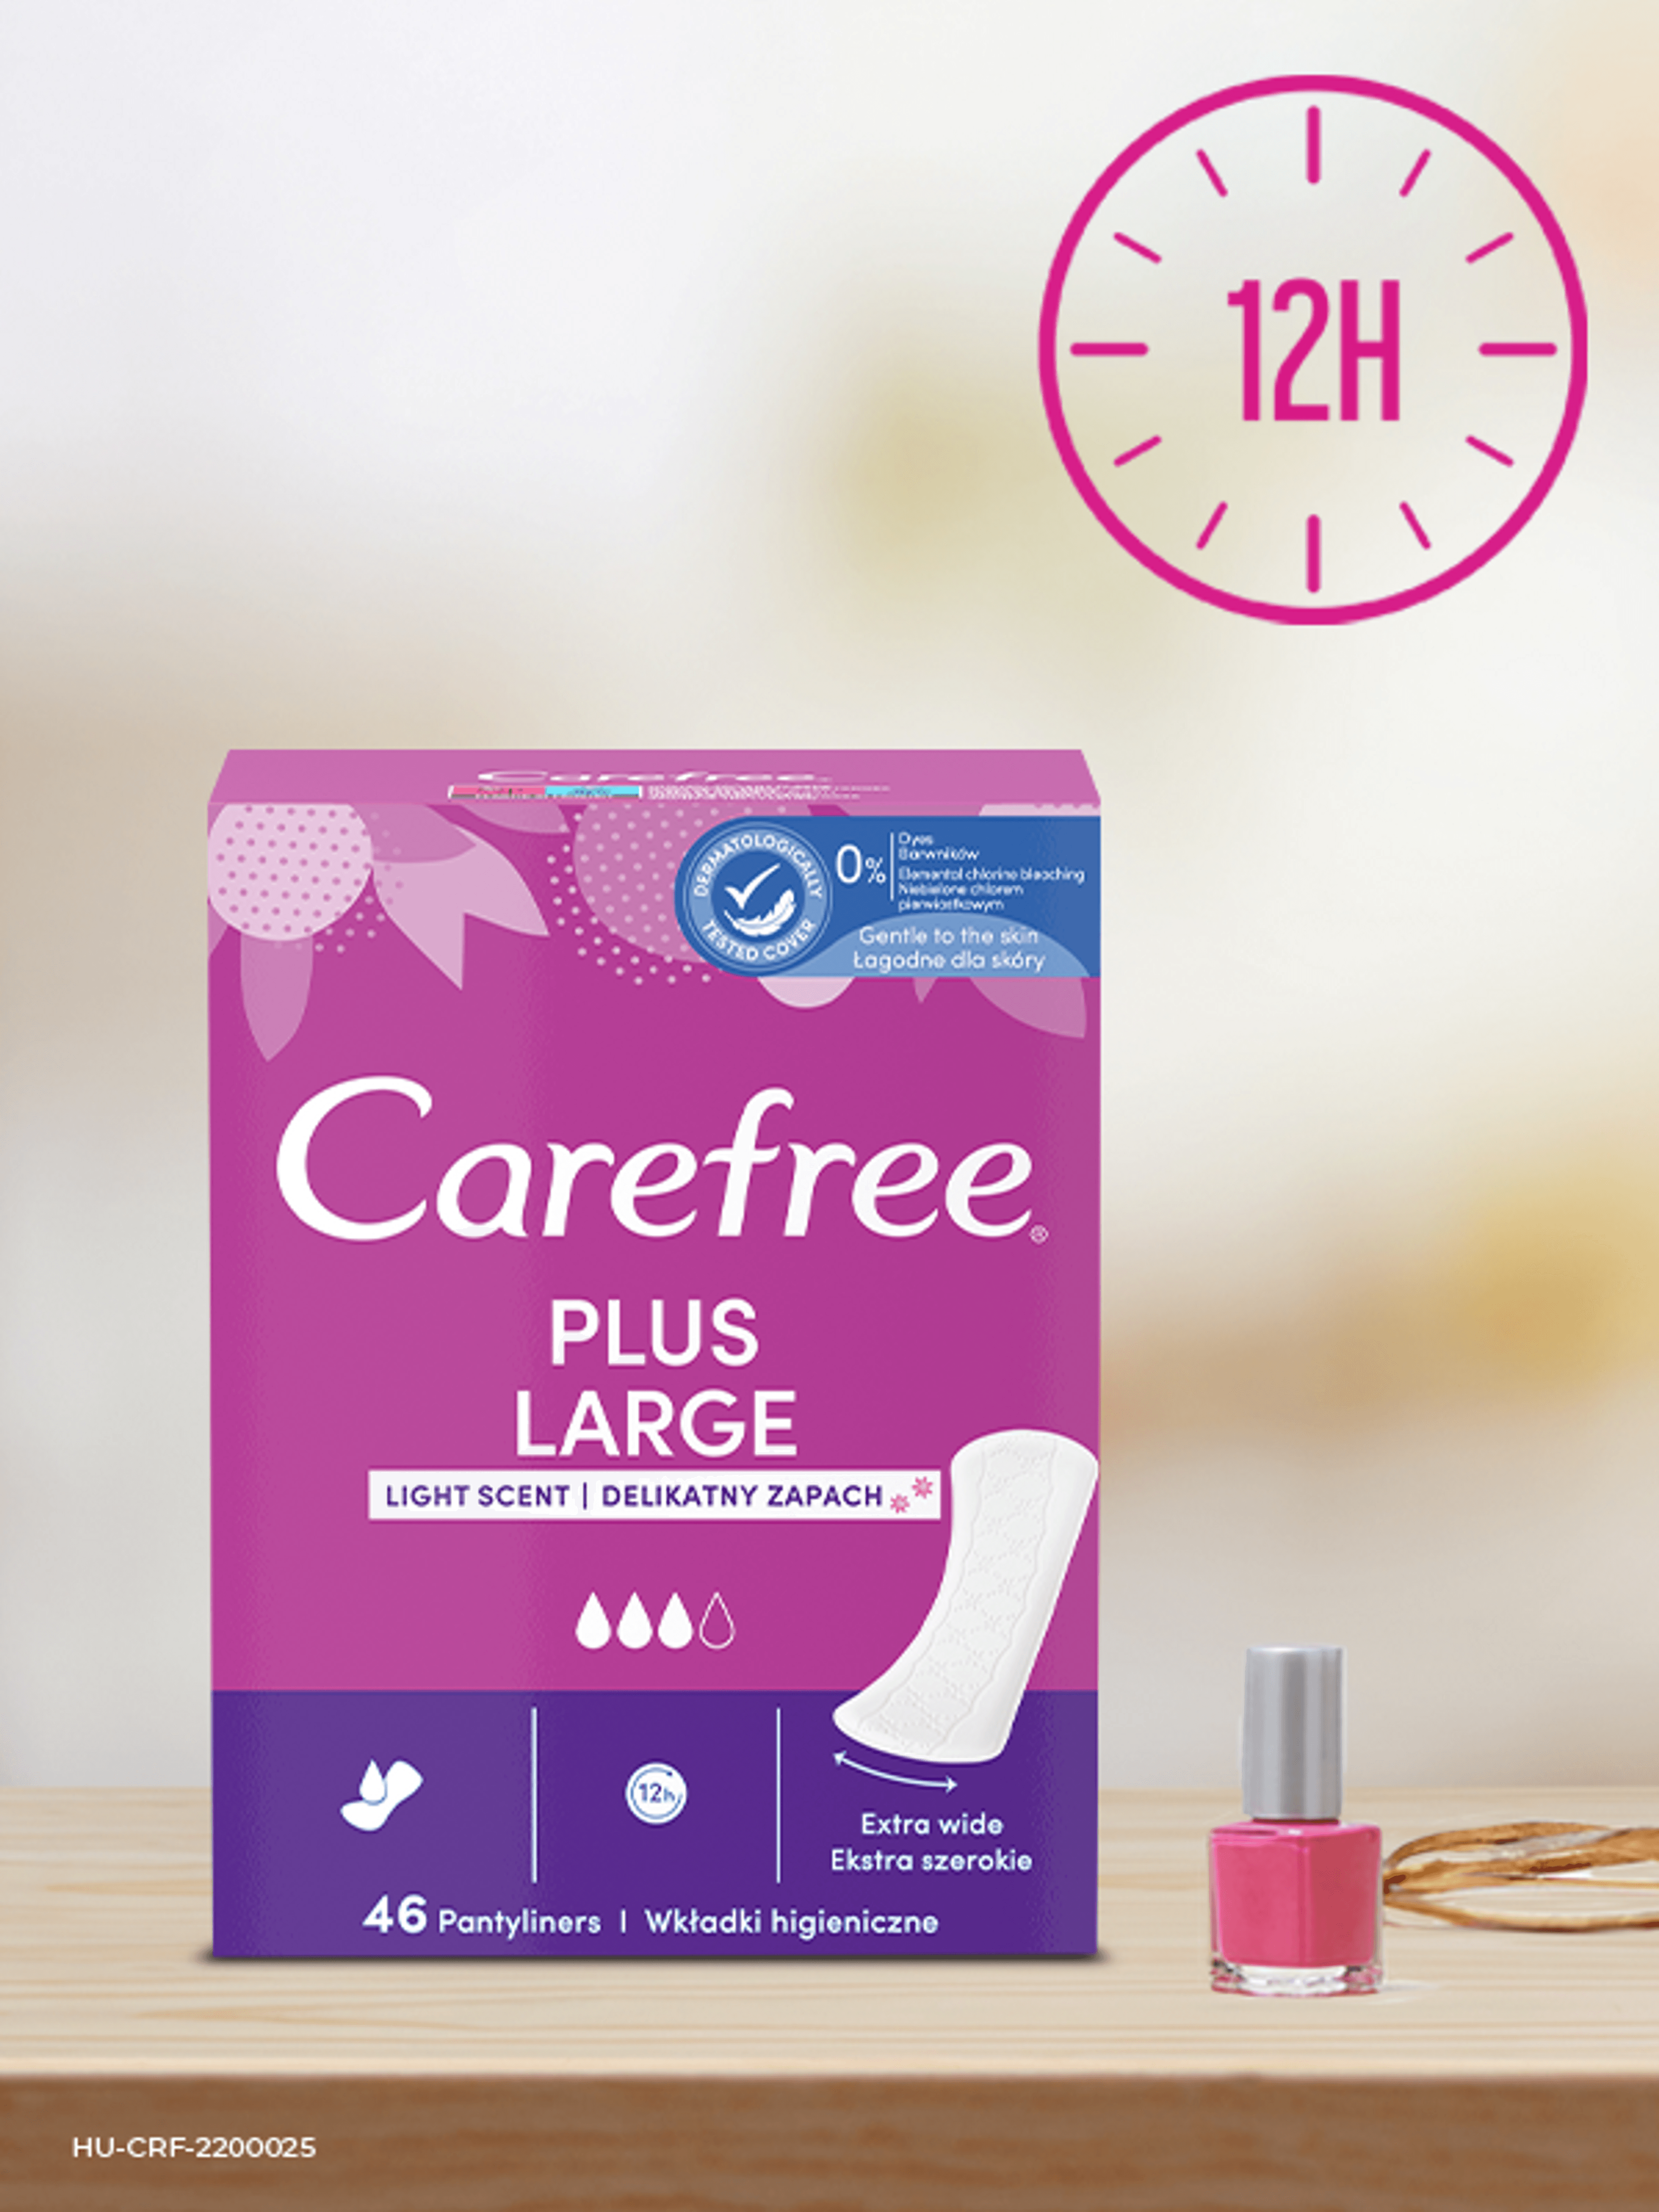 Carefree Plus Large tisztasági betét lágy illattal - 64 db-7